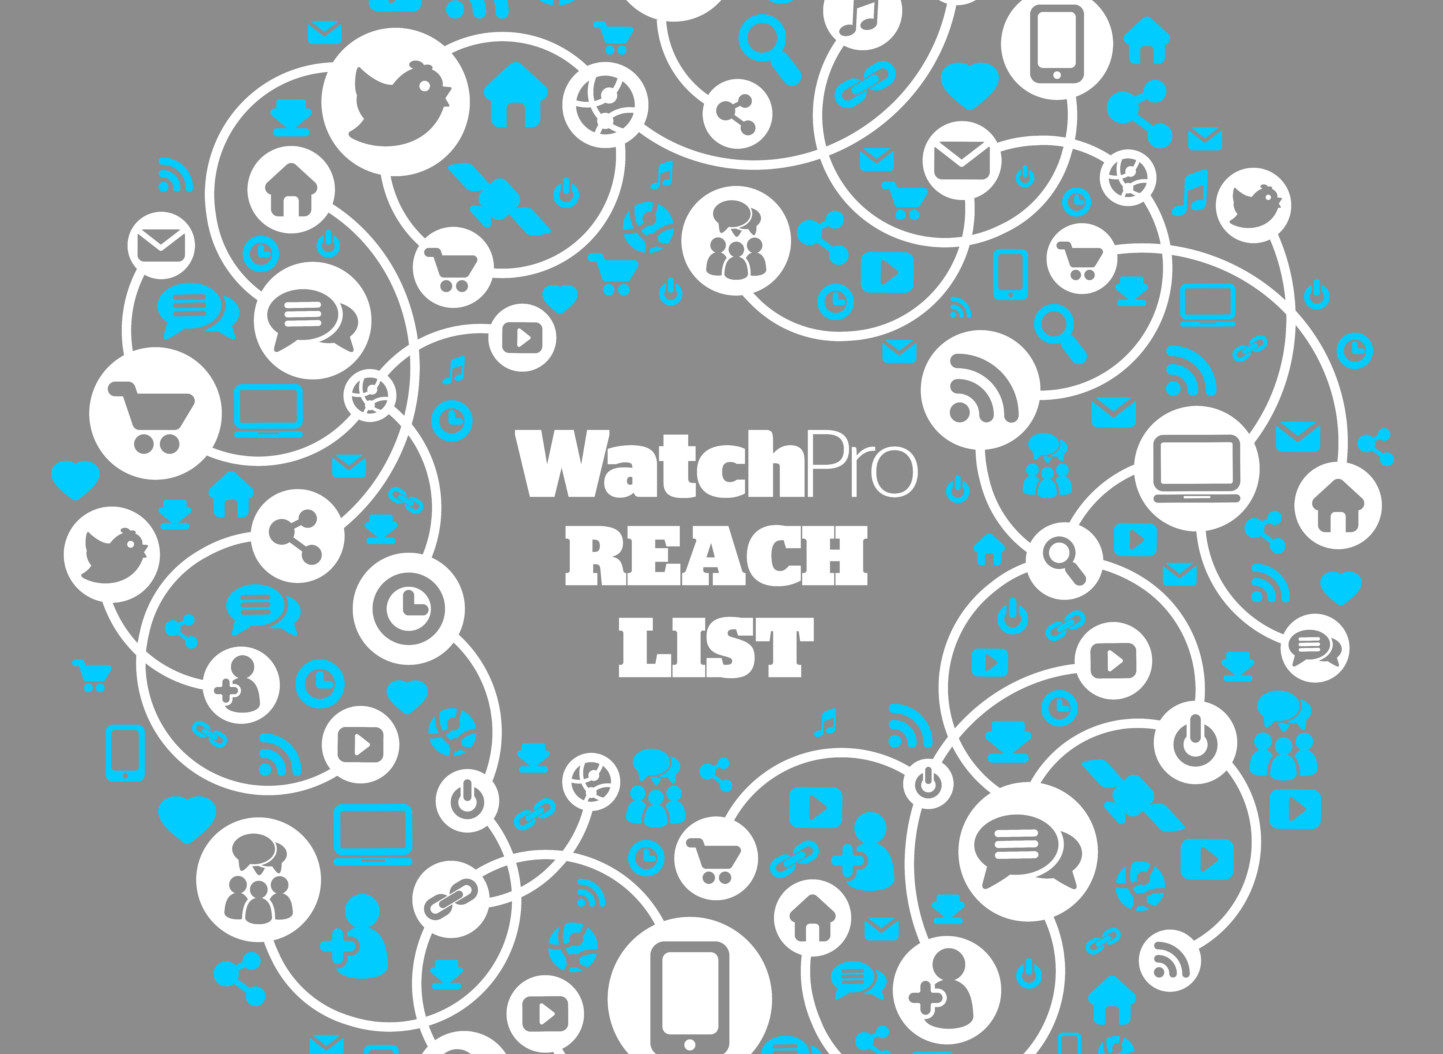 Watchpro reach list e1482147235237